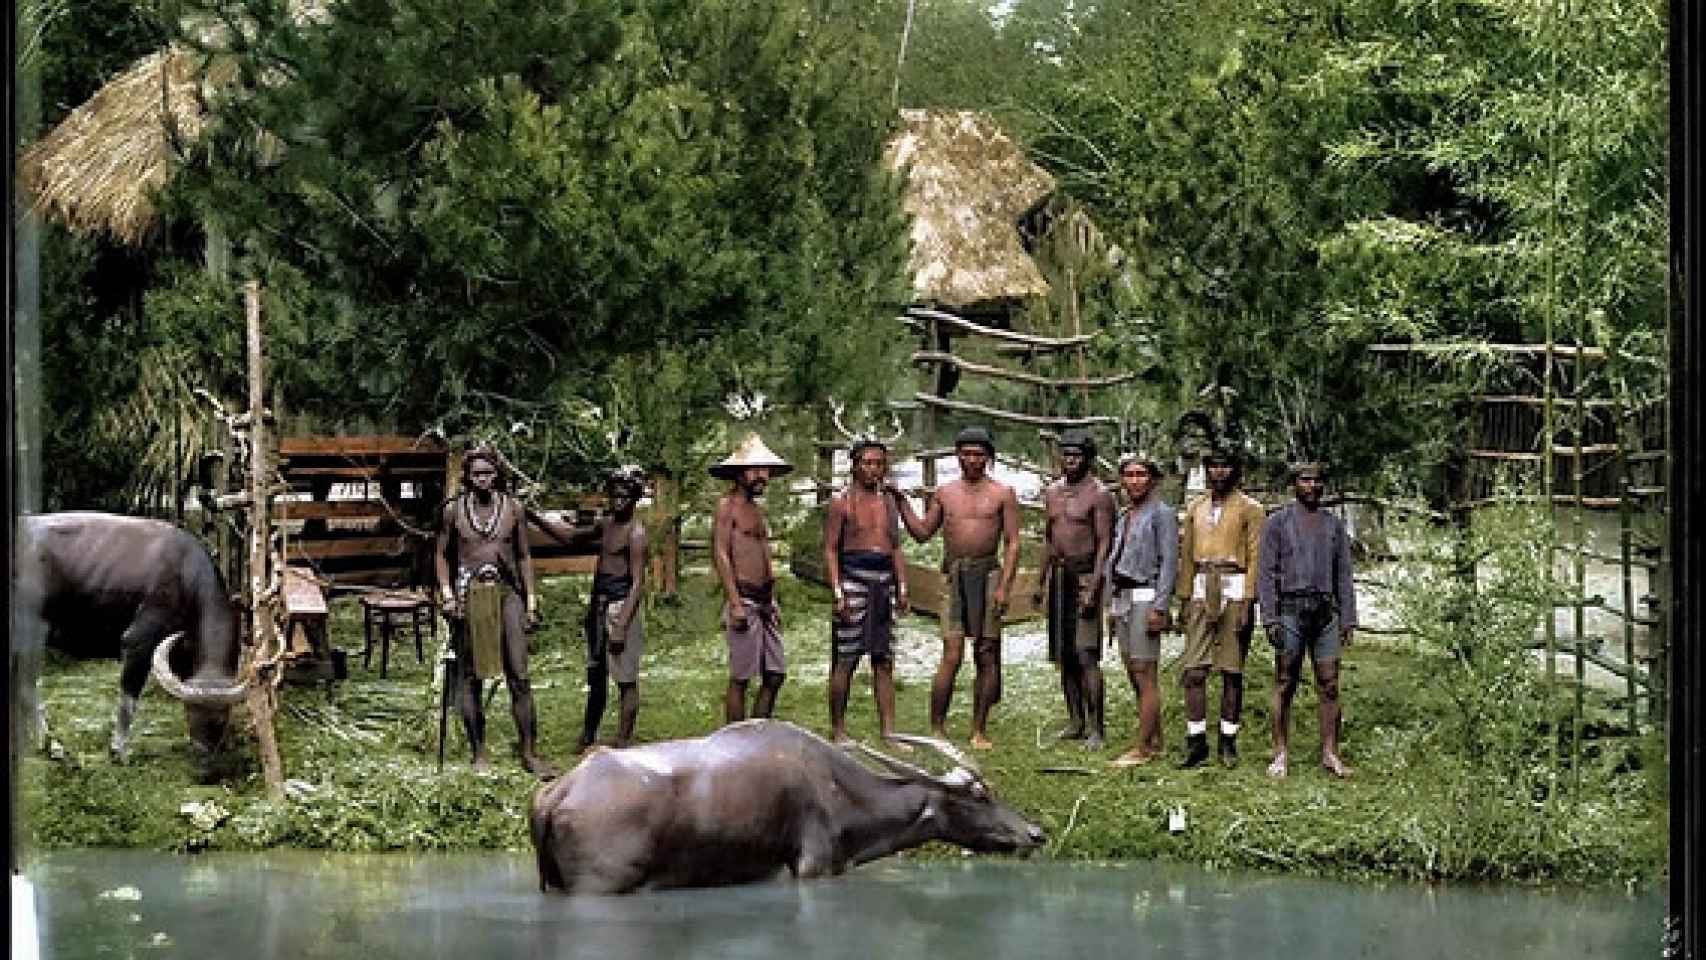 Indígenas filipinos y dos carabaos (búfalos de agua) en el Retiro durante la Exposición General de Filipinas de 1887.